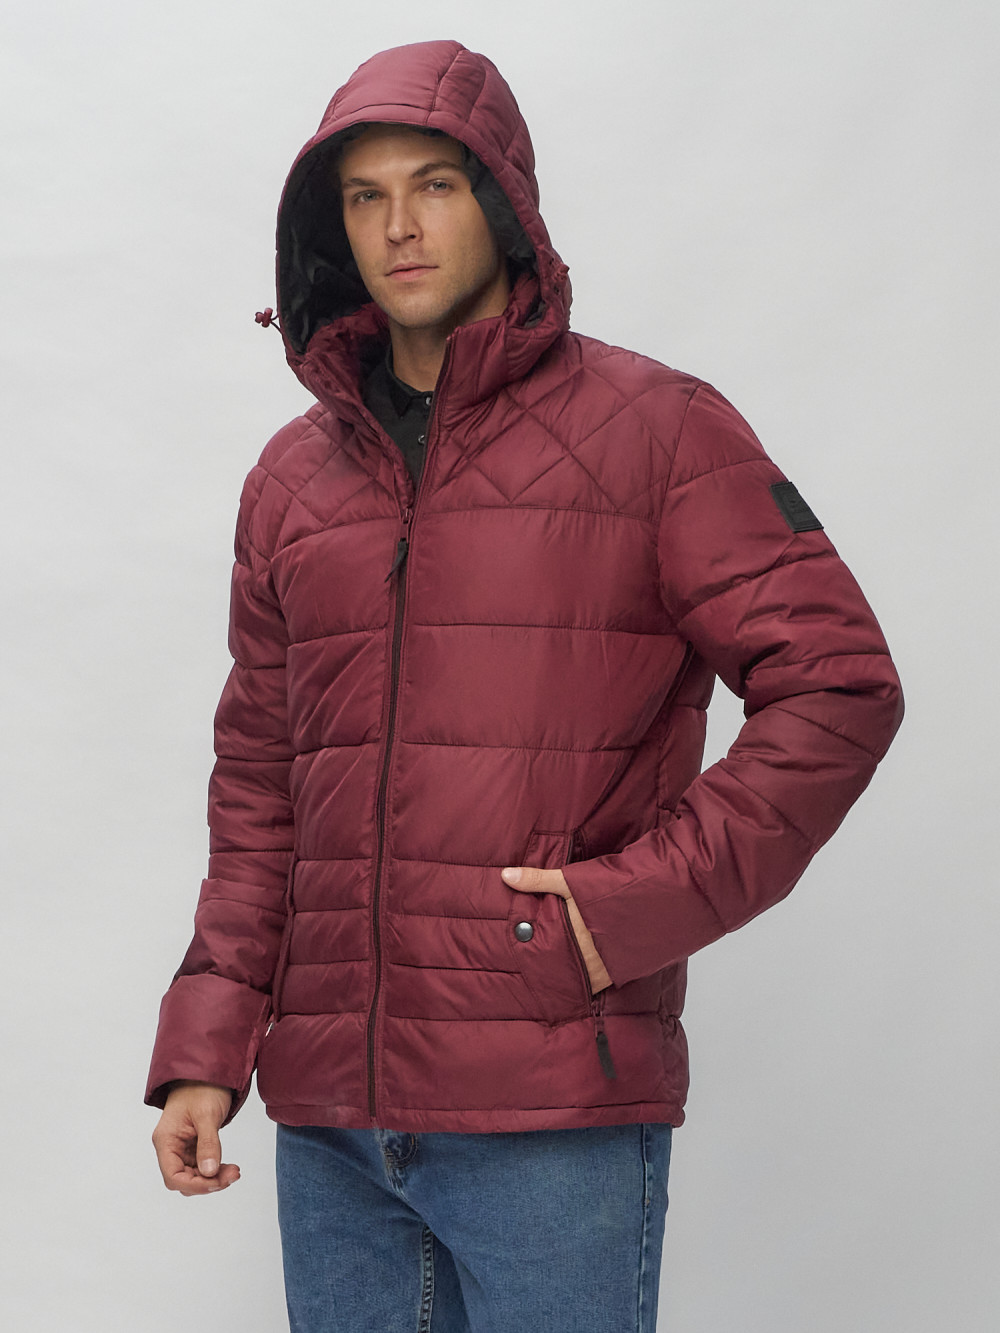 Купить куртку мужскую спортивную весеннюю оптом от производителя недорого в Москве 62179Bo 1